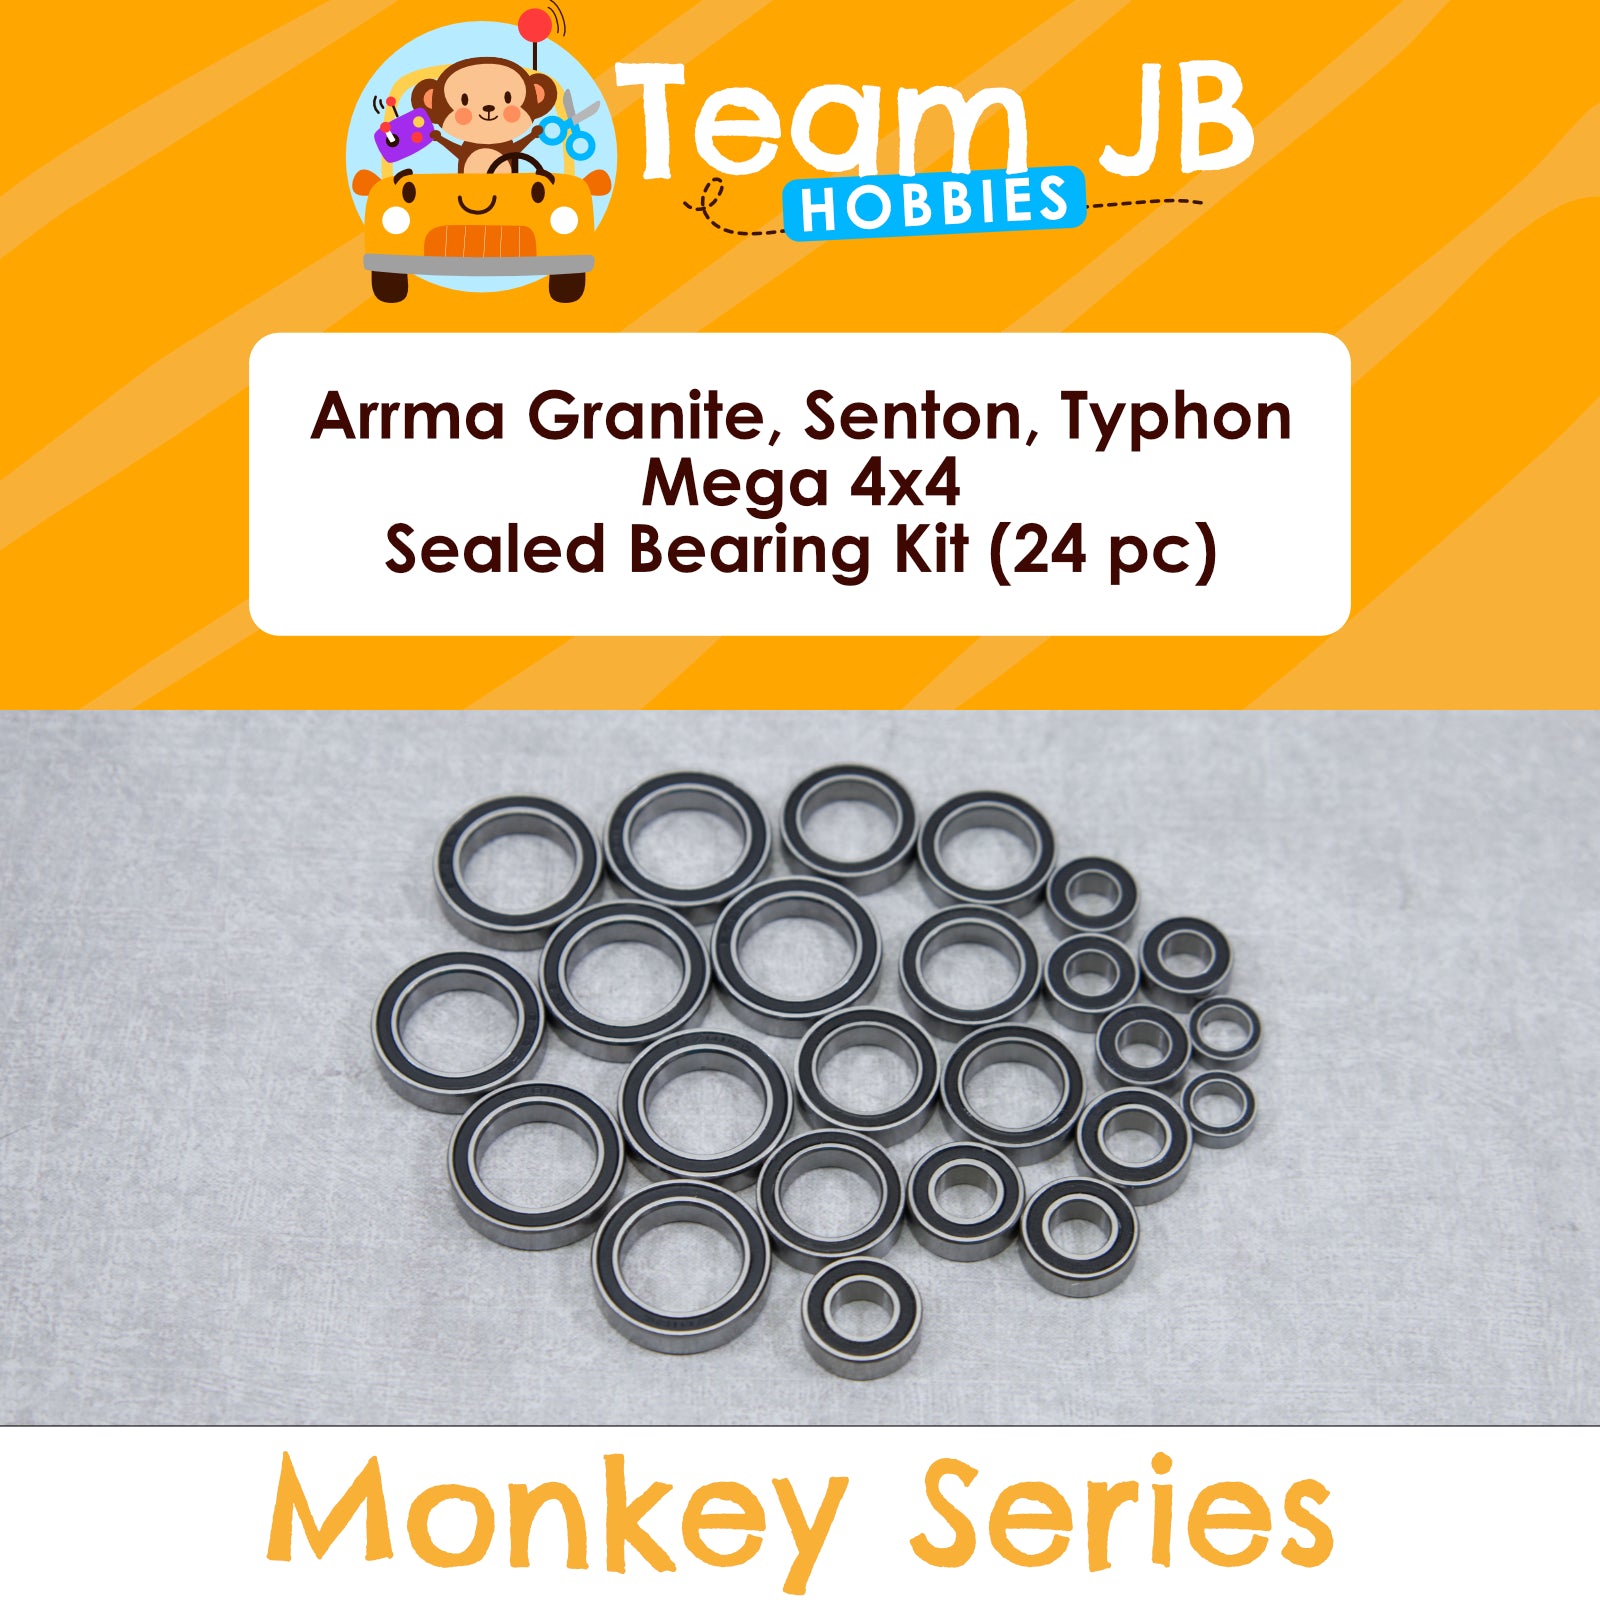 Arrma Granite, Senton, Typhon - Mega 4x4 Sealed Bearing Kit